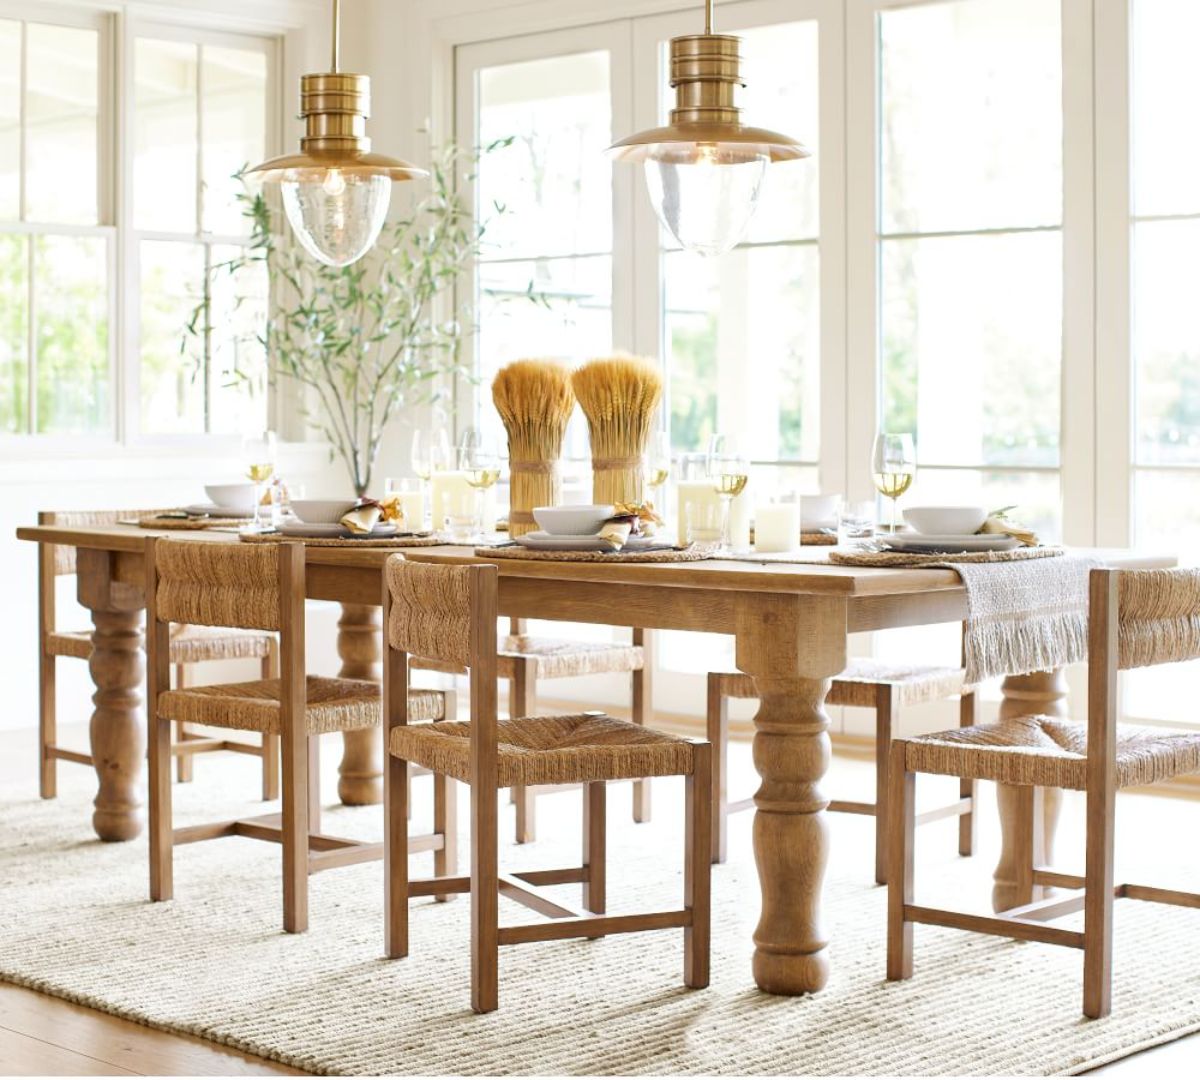 阳光充足的厨房桌子设置在木材和大窗户由陶器谷仓